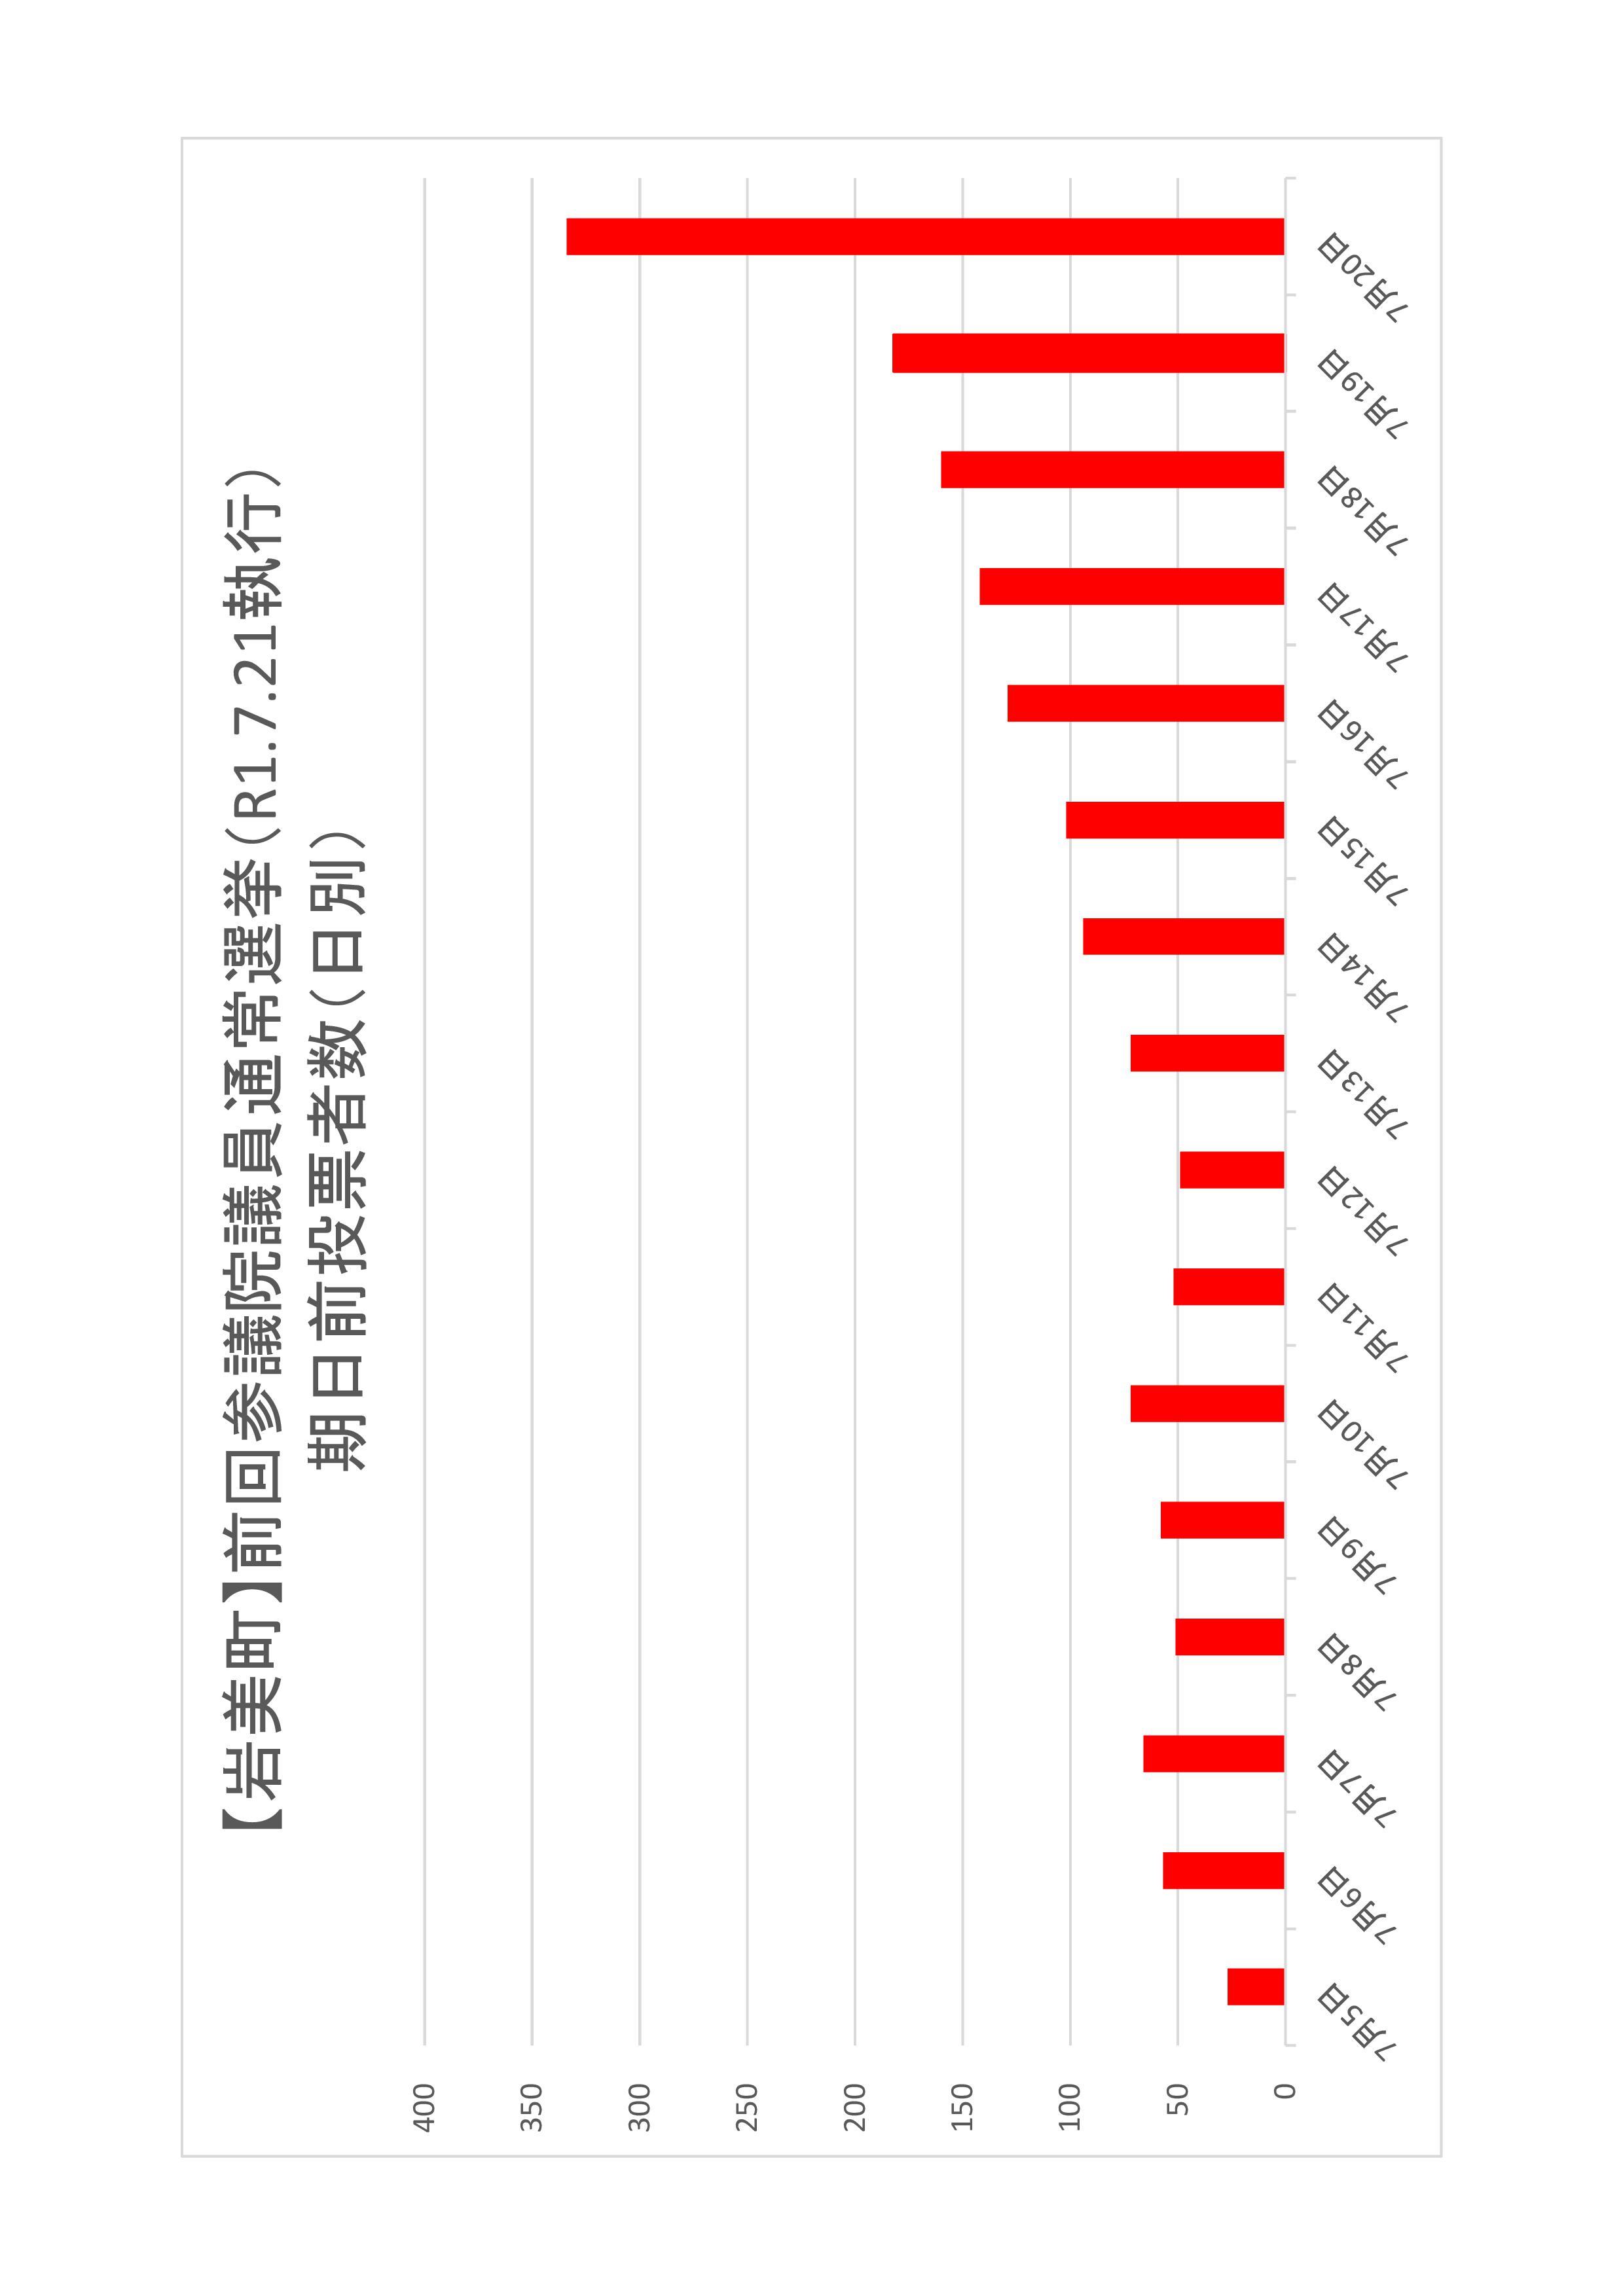 岩美町の日別期日前投票者数のグラフ